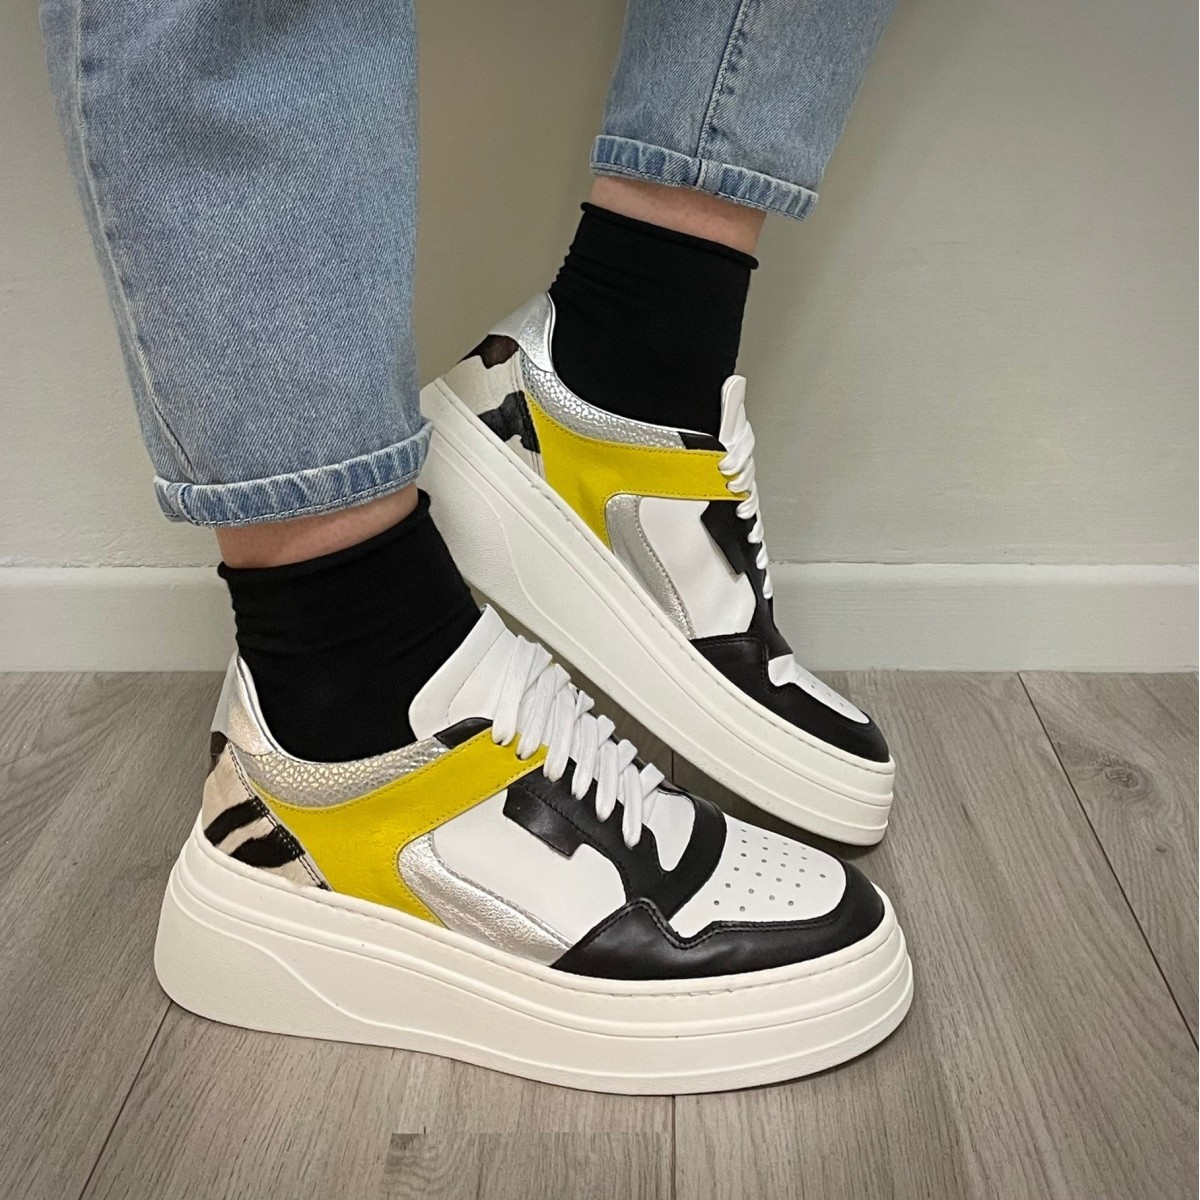 Sneakers platform nero giallo